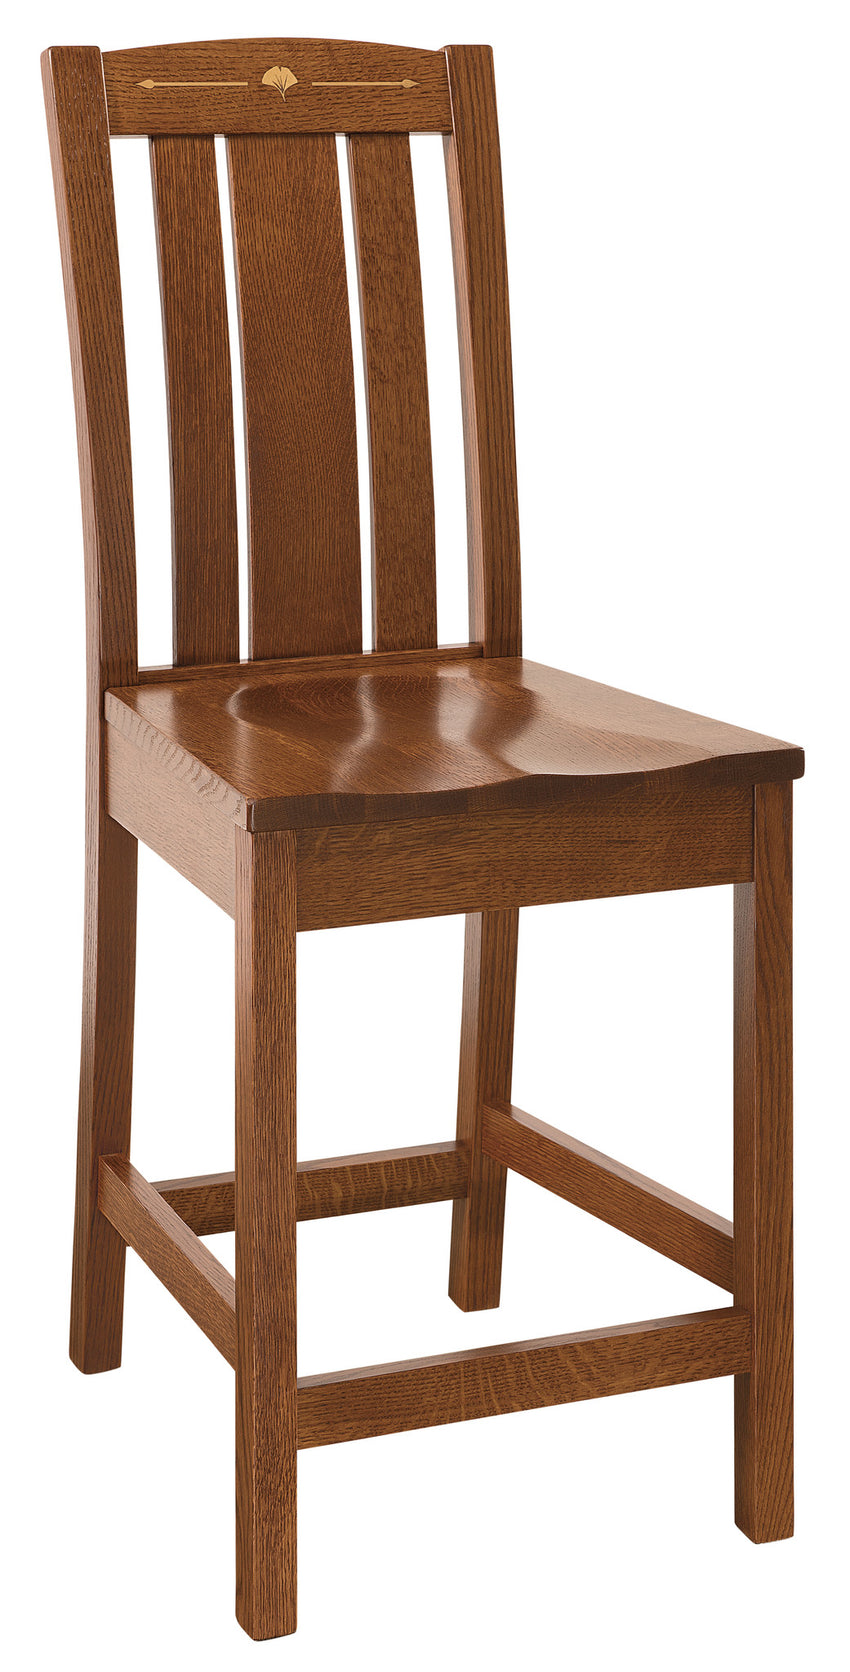 Mesa Bar Chair